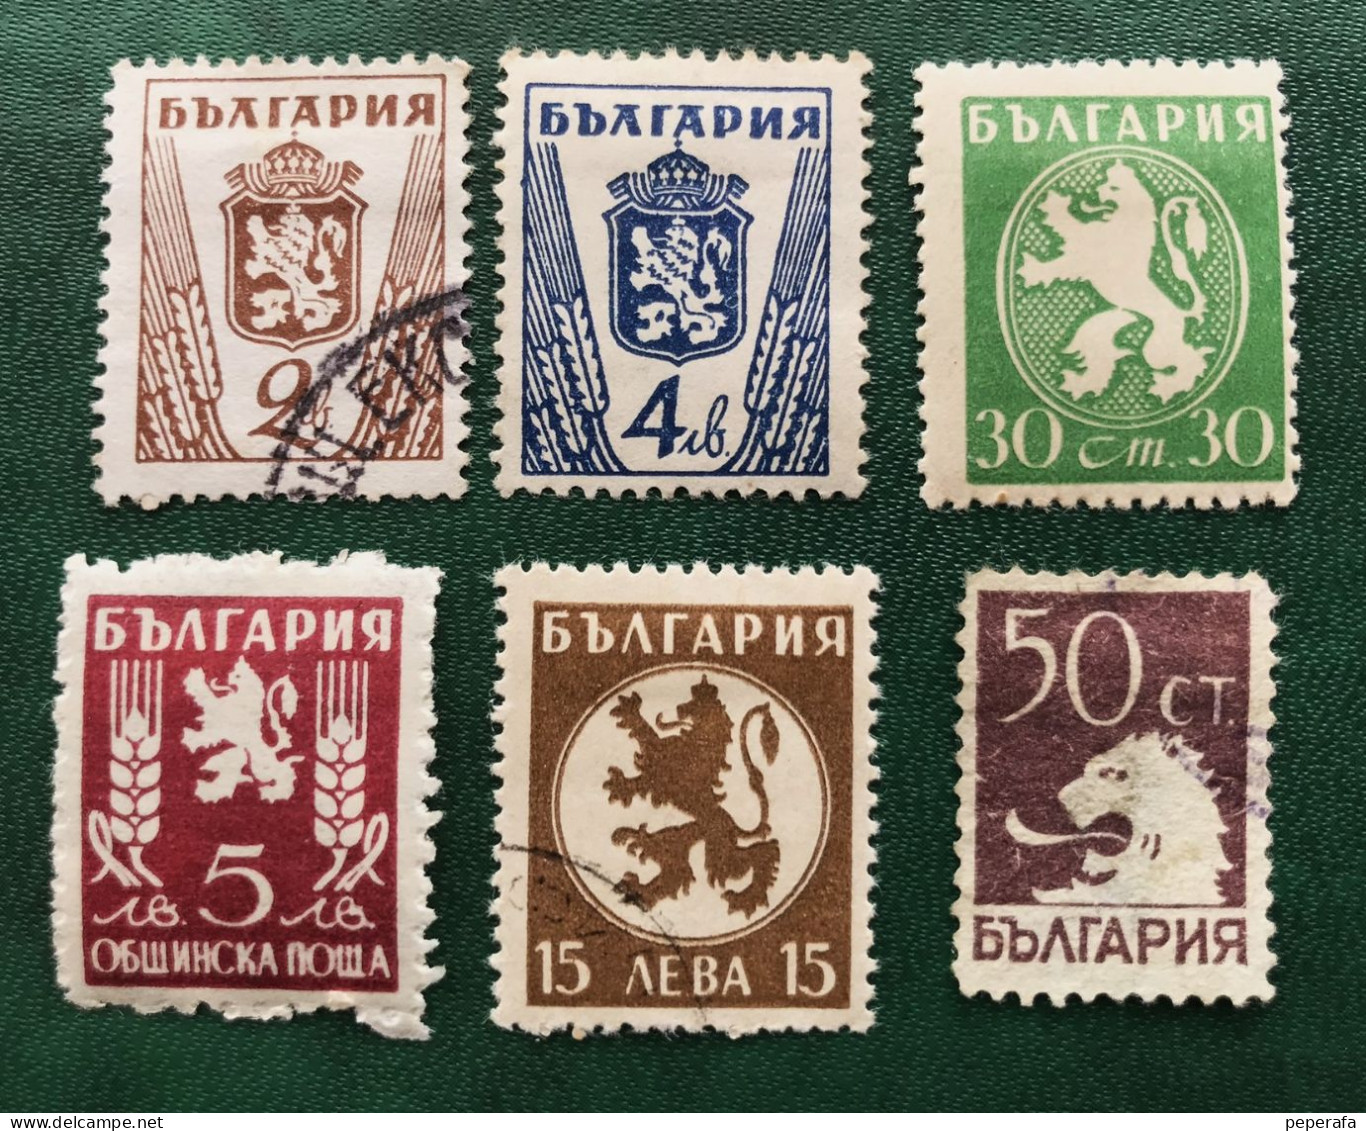 BULGARIA COLECCIÓN SELLOS CLÁSICOS (LOTE 3) - Used Stamps